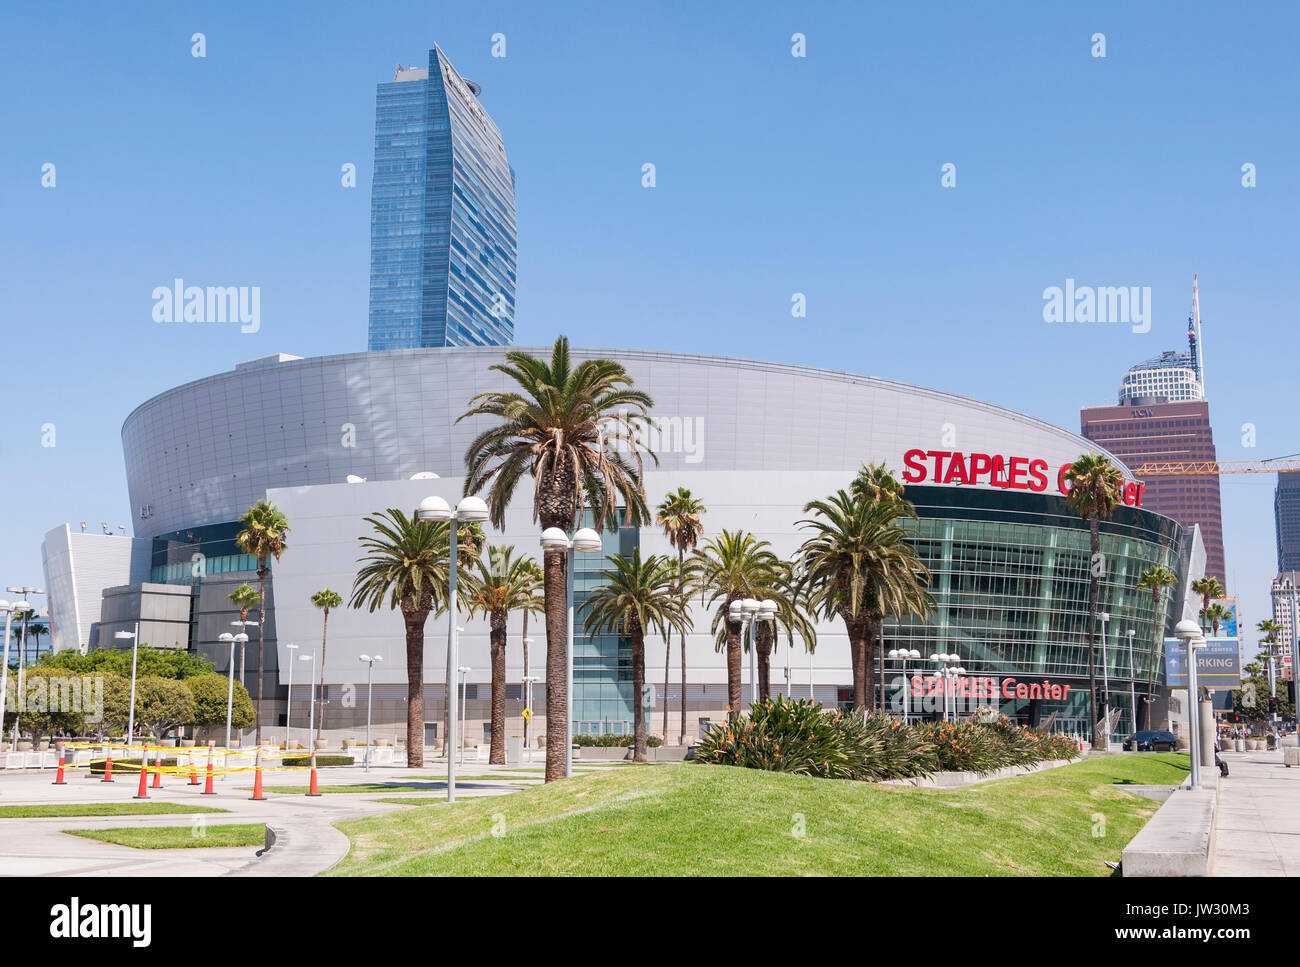 03. September 2016. Los Angeles - die Vereinigten Staaten von Amerika. Berühmte Staples Center ist ein multifunktionales Stadion in der Innenstadt von Los Angeles. Stockfoto